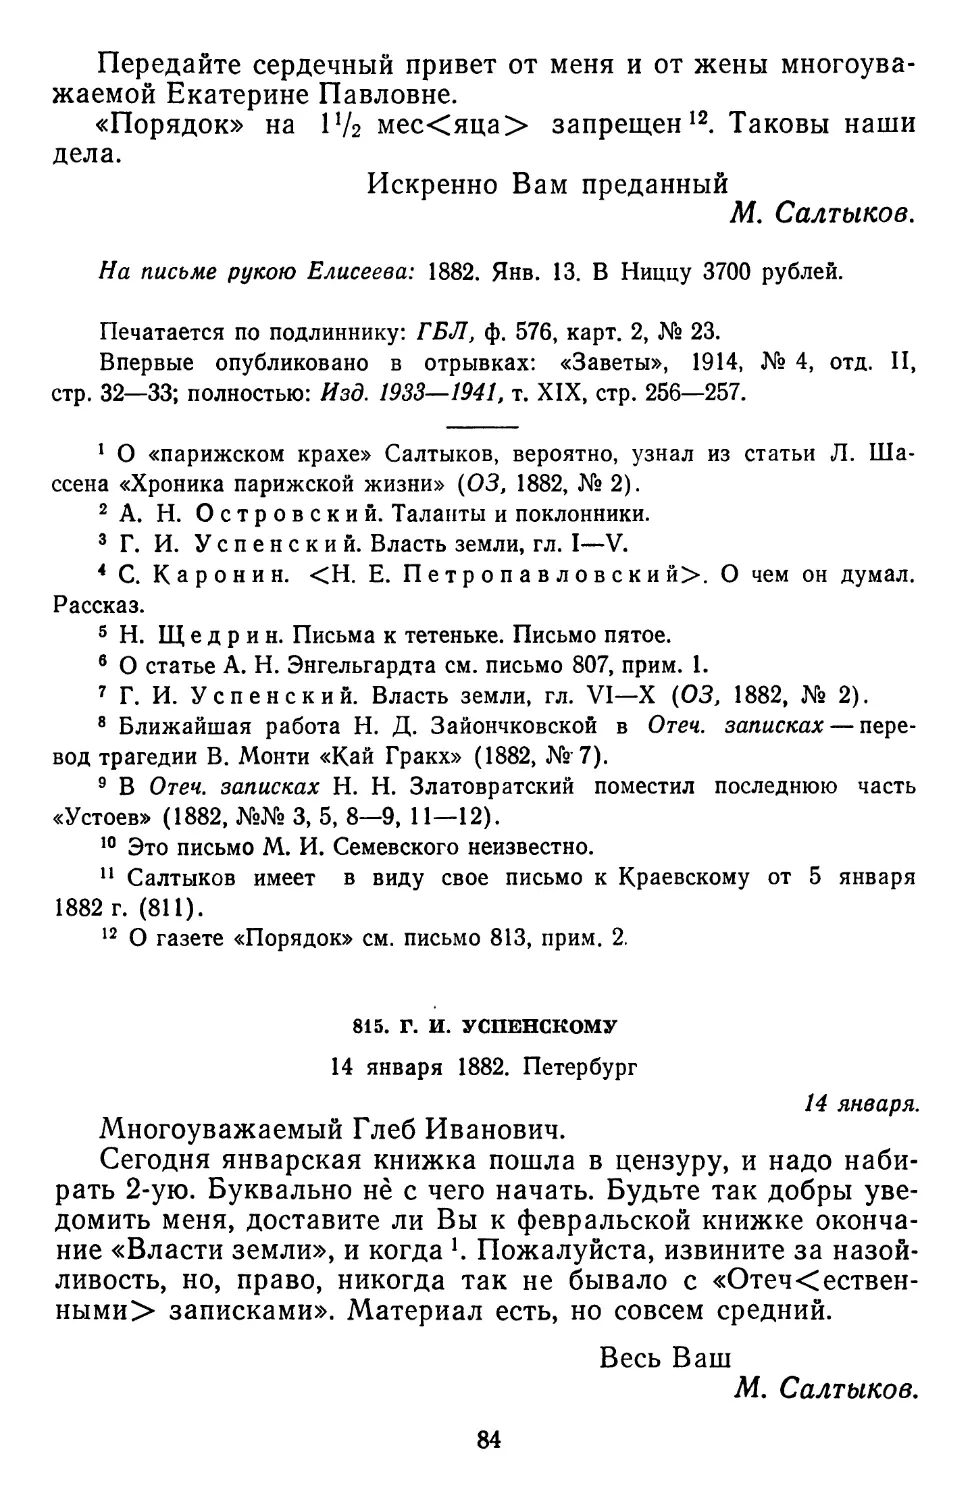 815.Г. И. Успенскому. 14 января 1882. Петербург